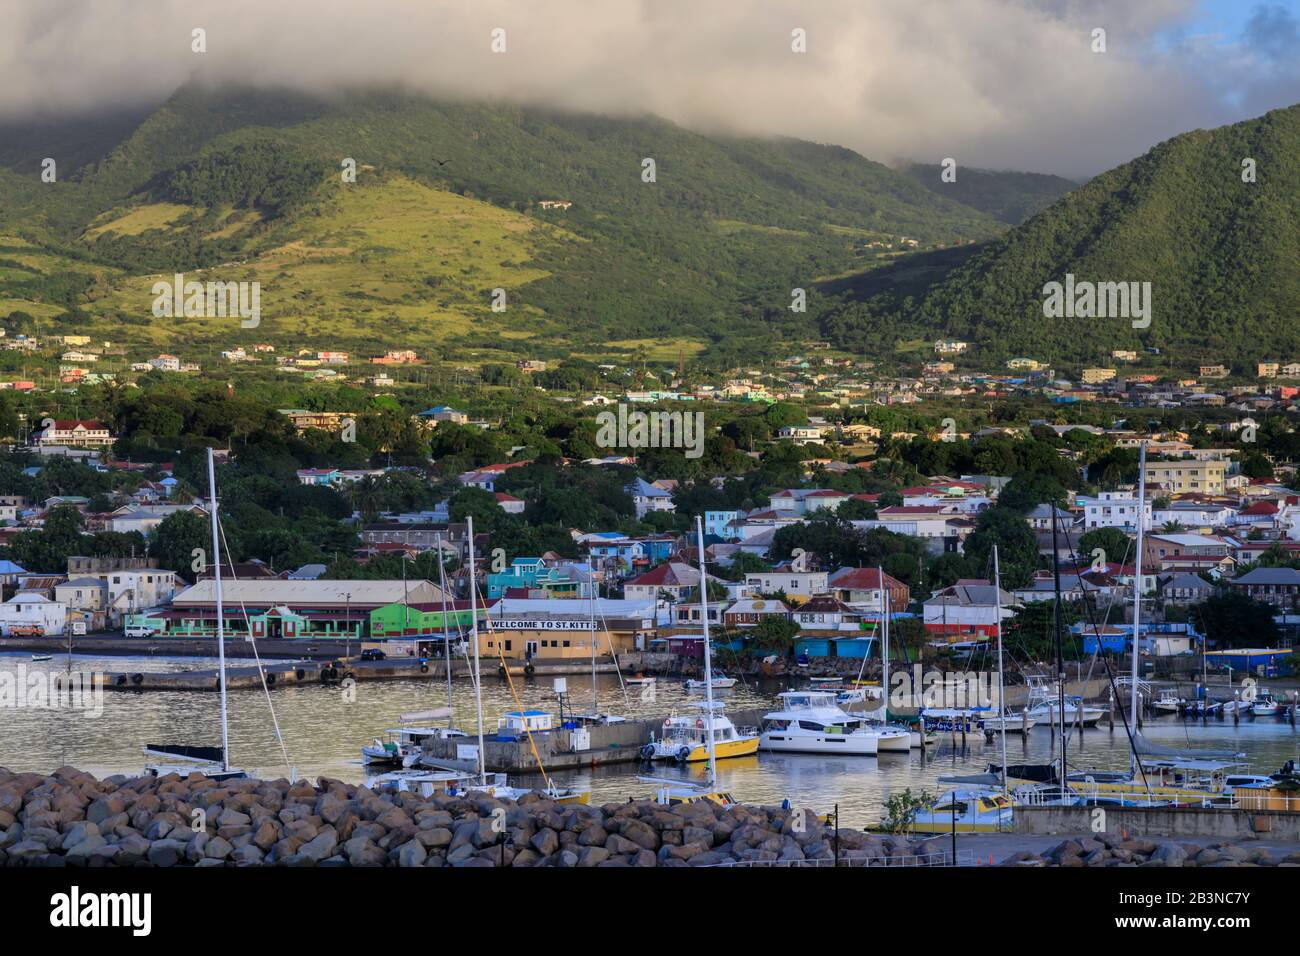 Basseterre, lever du soleil, vue élevée depuis la mer, Basseterre, Saint-Kitts-et-Nevis, îles Leeward, Antilles, Caraïbes, Amérique centrale Banque D'Images